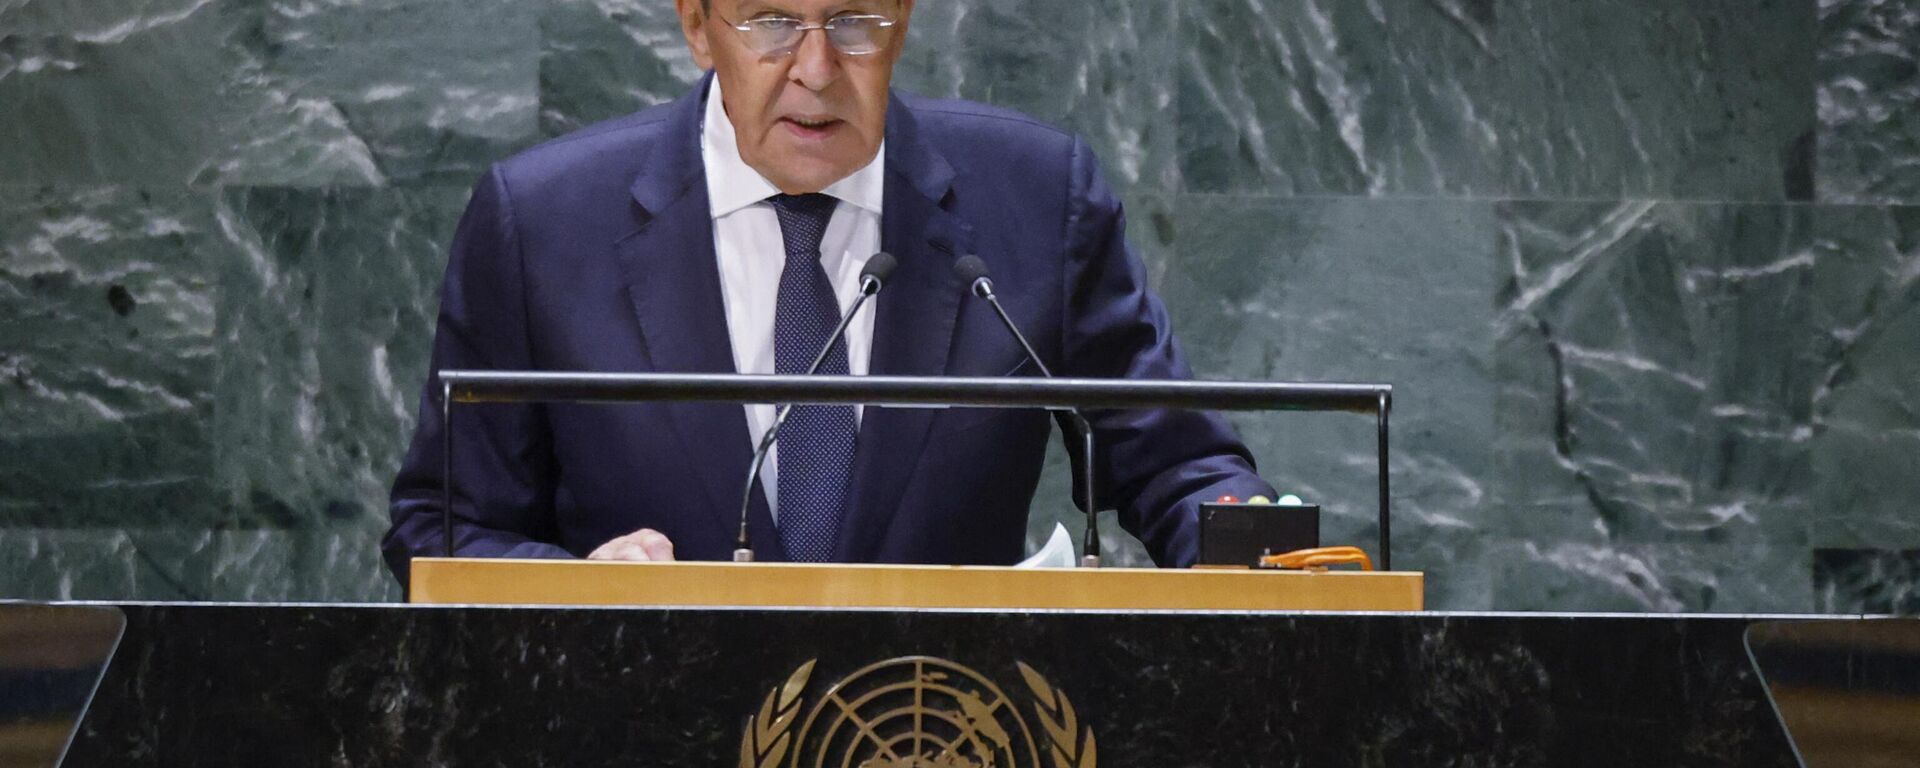 Sergei Lavrov, ministro das Relações Exteriores da Rússia, discursa na 78ª Assembleia Geral das Nações Unidas em Nova York, EUA, 23 de setembro de 2023 - Sputnik Brasil, 1920, 23.09.2023